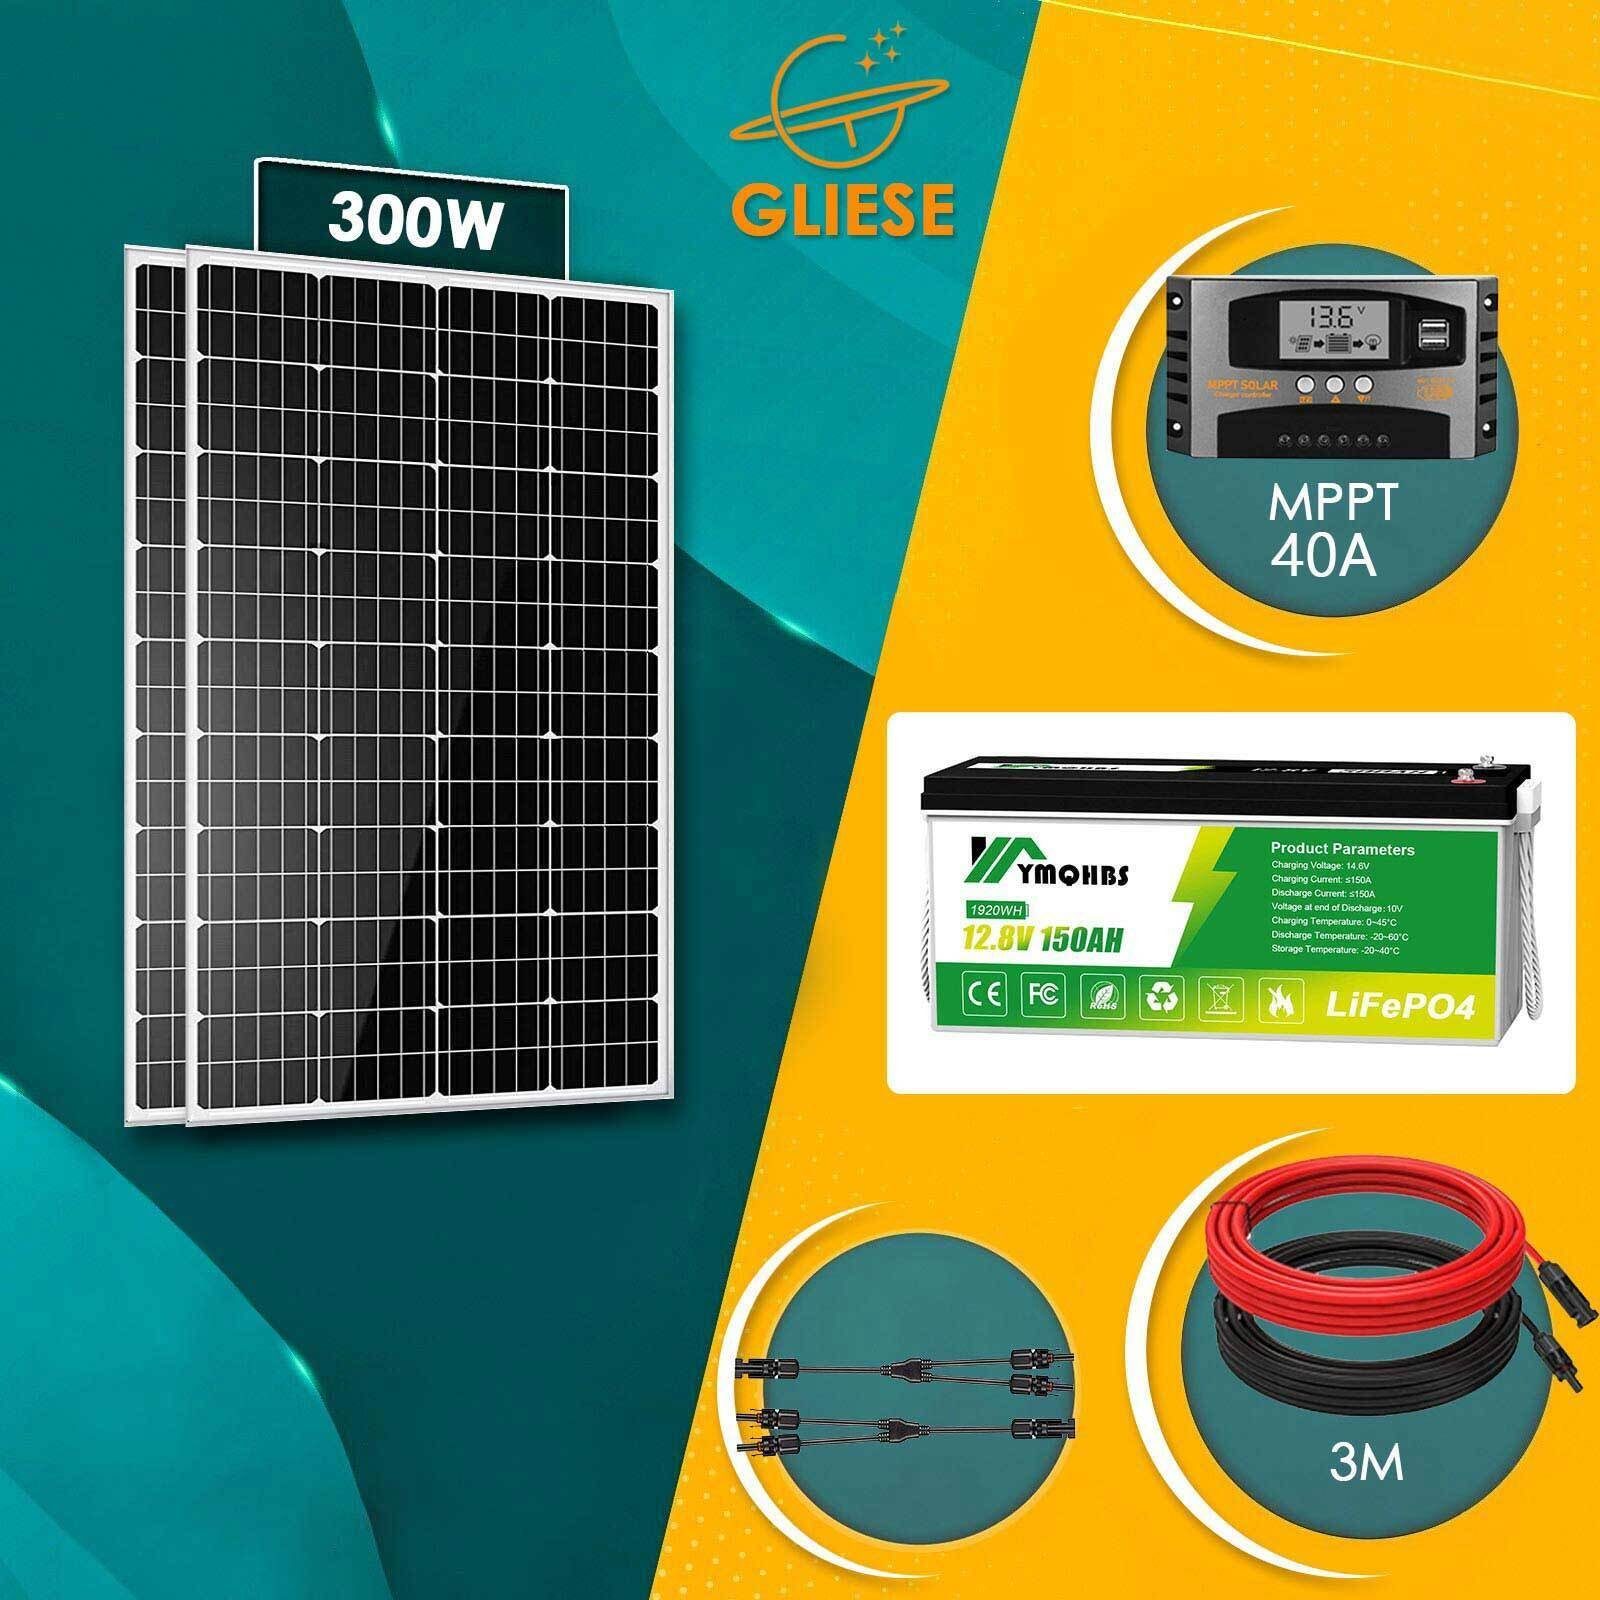 LiFePO4 Batterie Solarpanel Akku GLIESE Solarmodul Lithium 150Ah 300W +